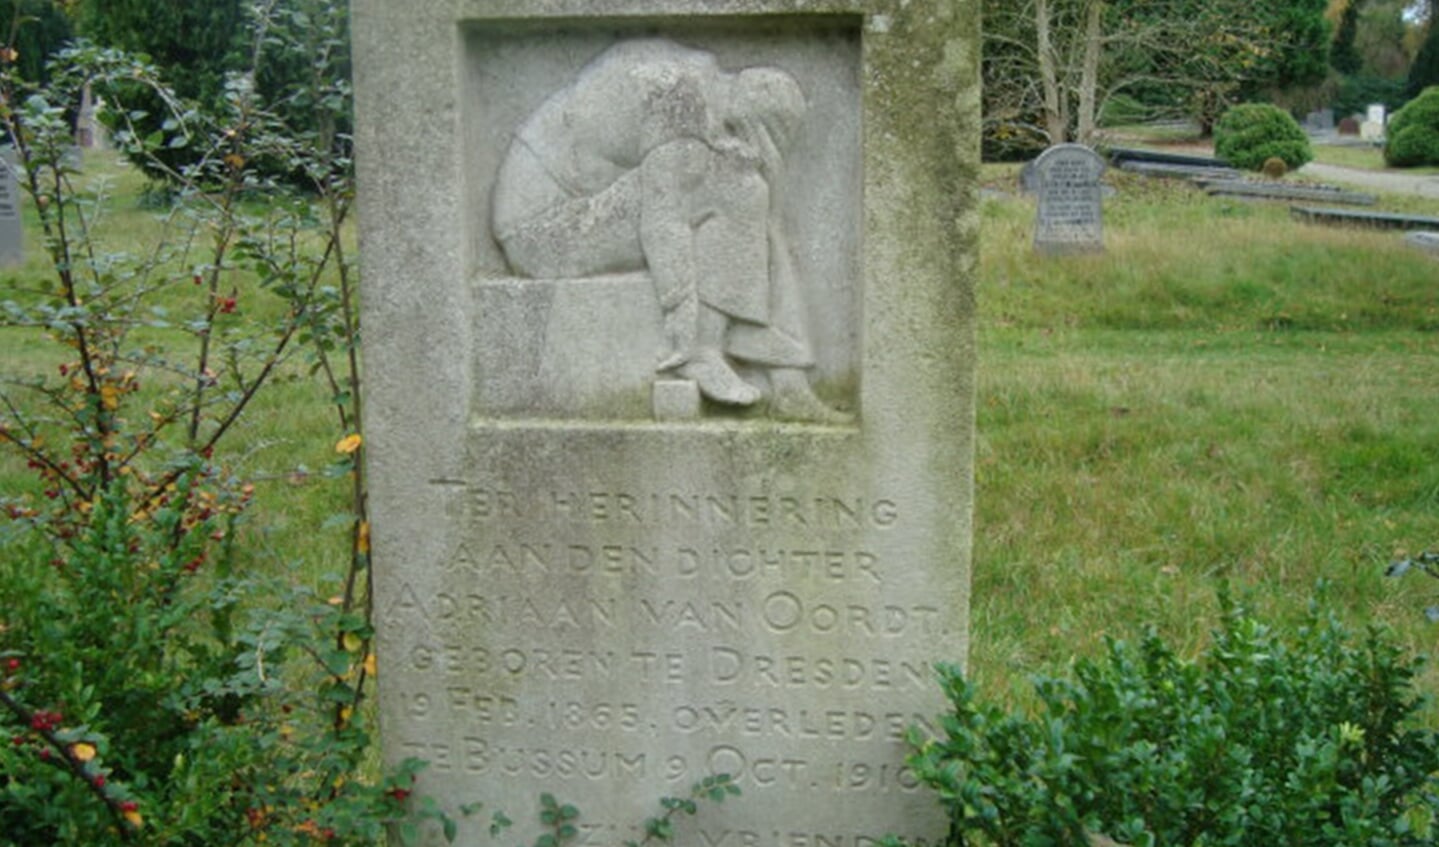 Grafsteen voor Adriaan Oordt in Bussum. 